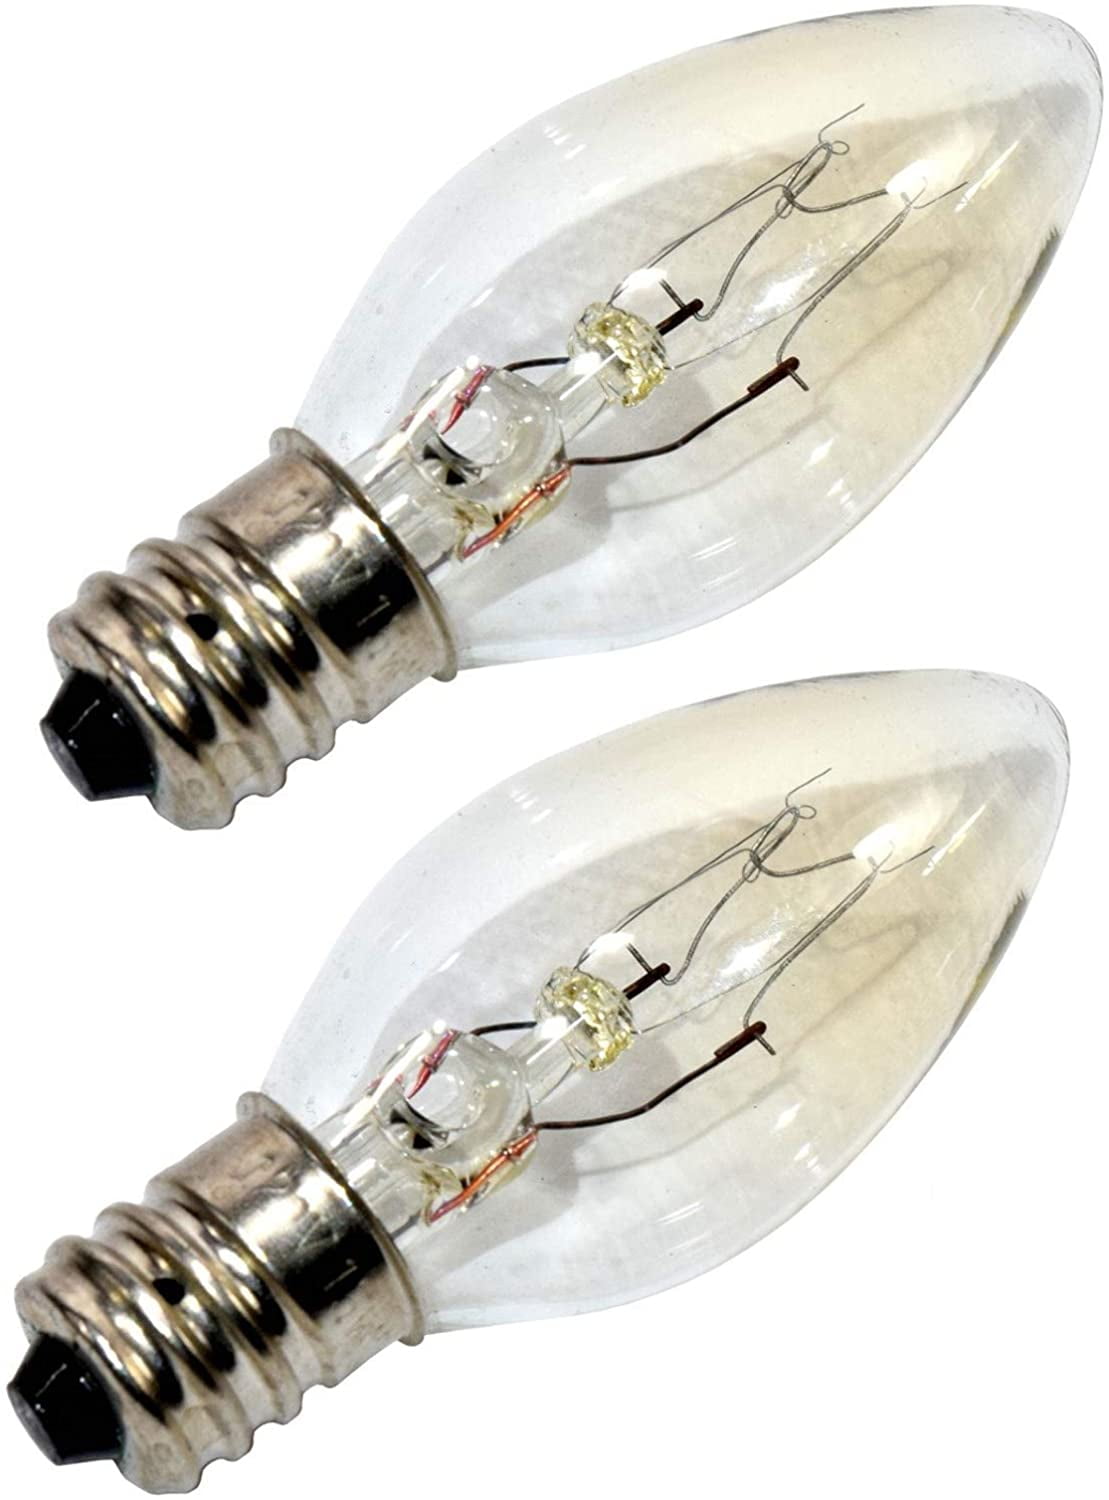 120v salt lamp bulbs himalayan salt